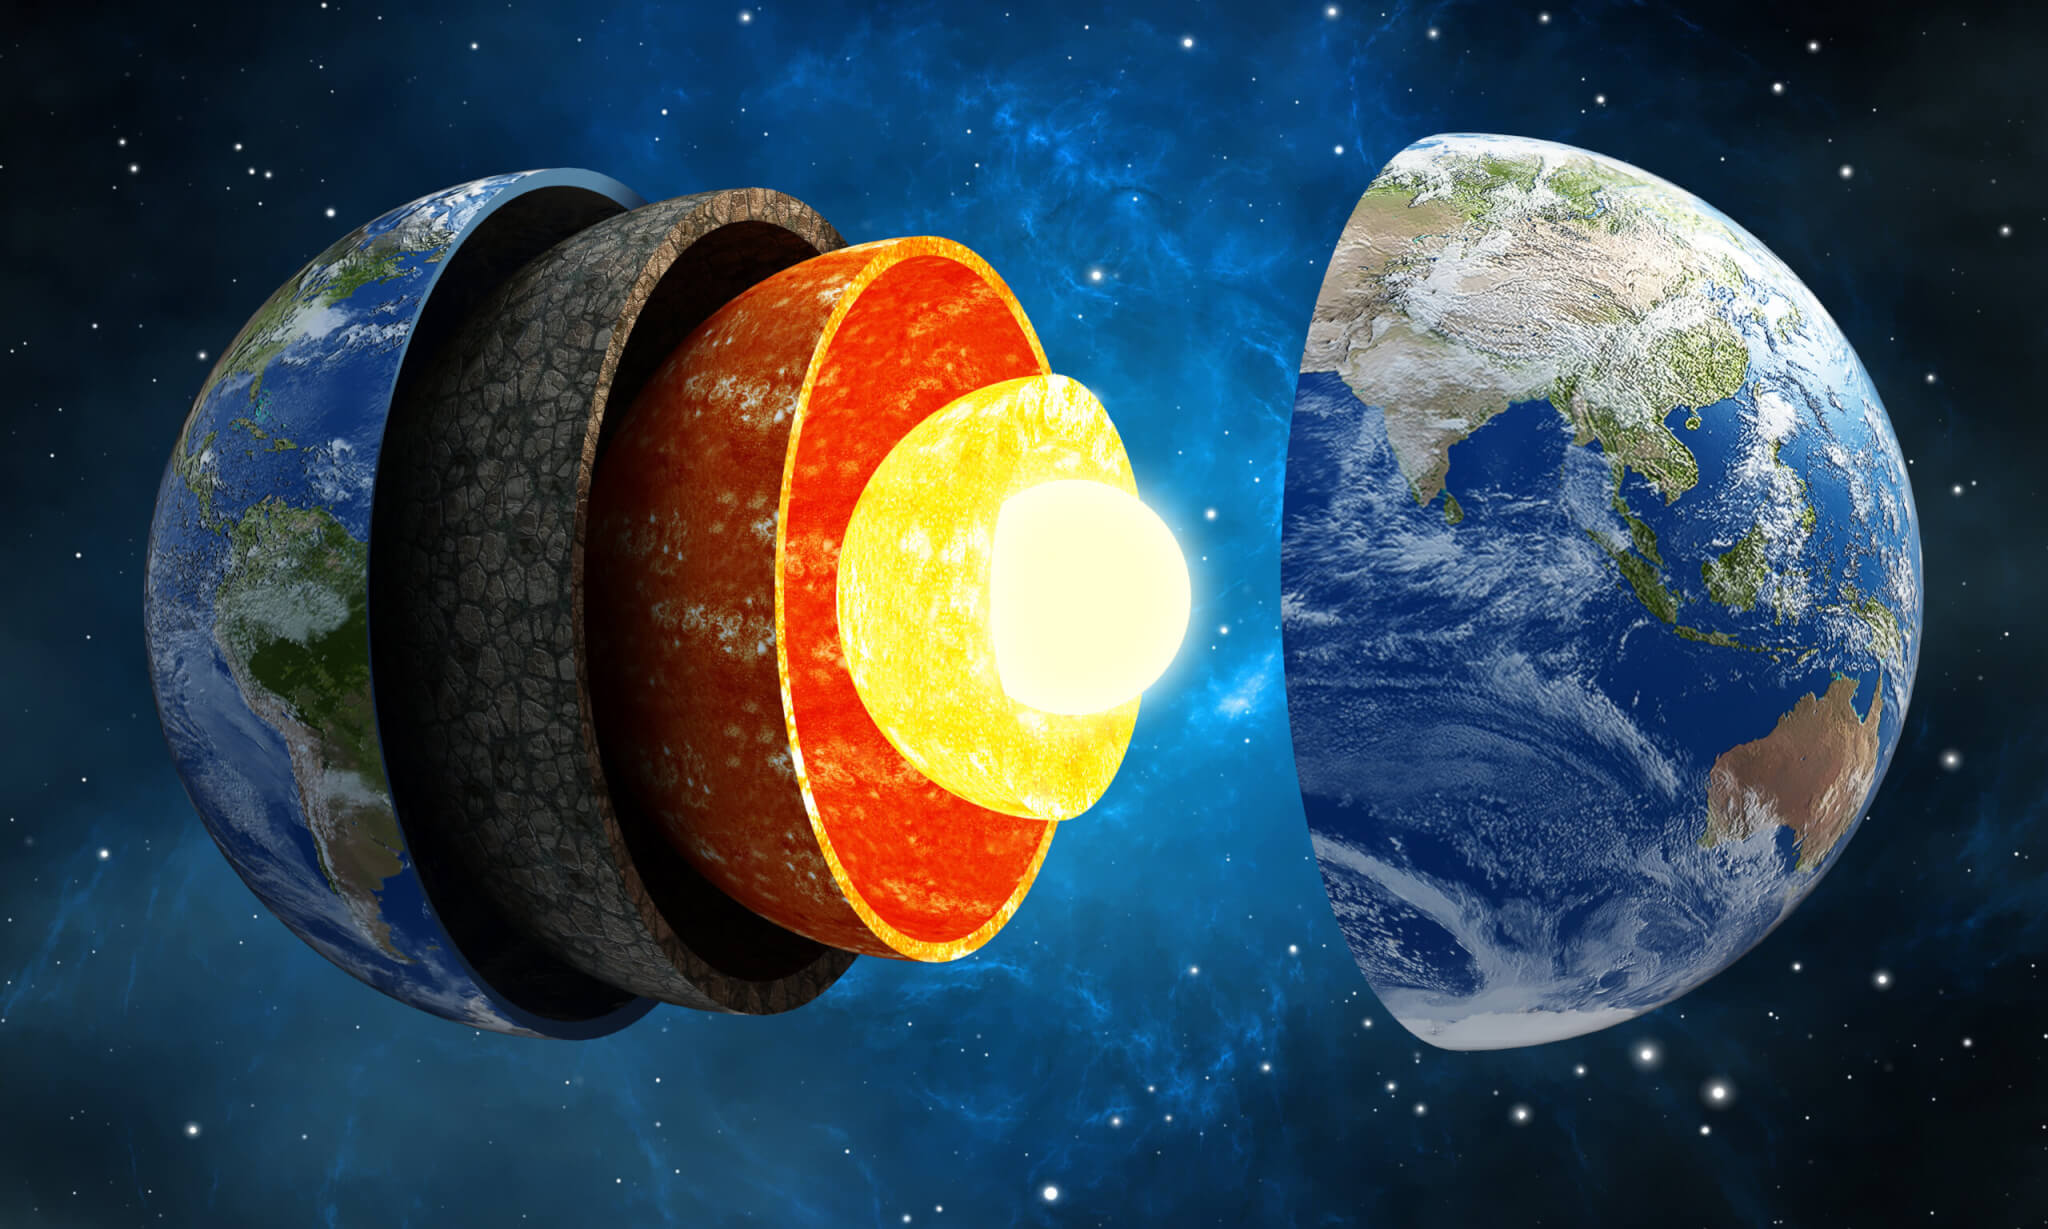 Estudar o núcleo interno da Terra revela a existência de um ‘planeta dentro de um planeta’